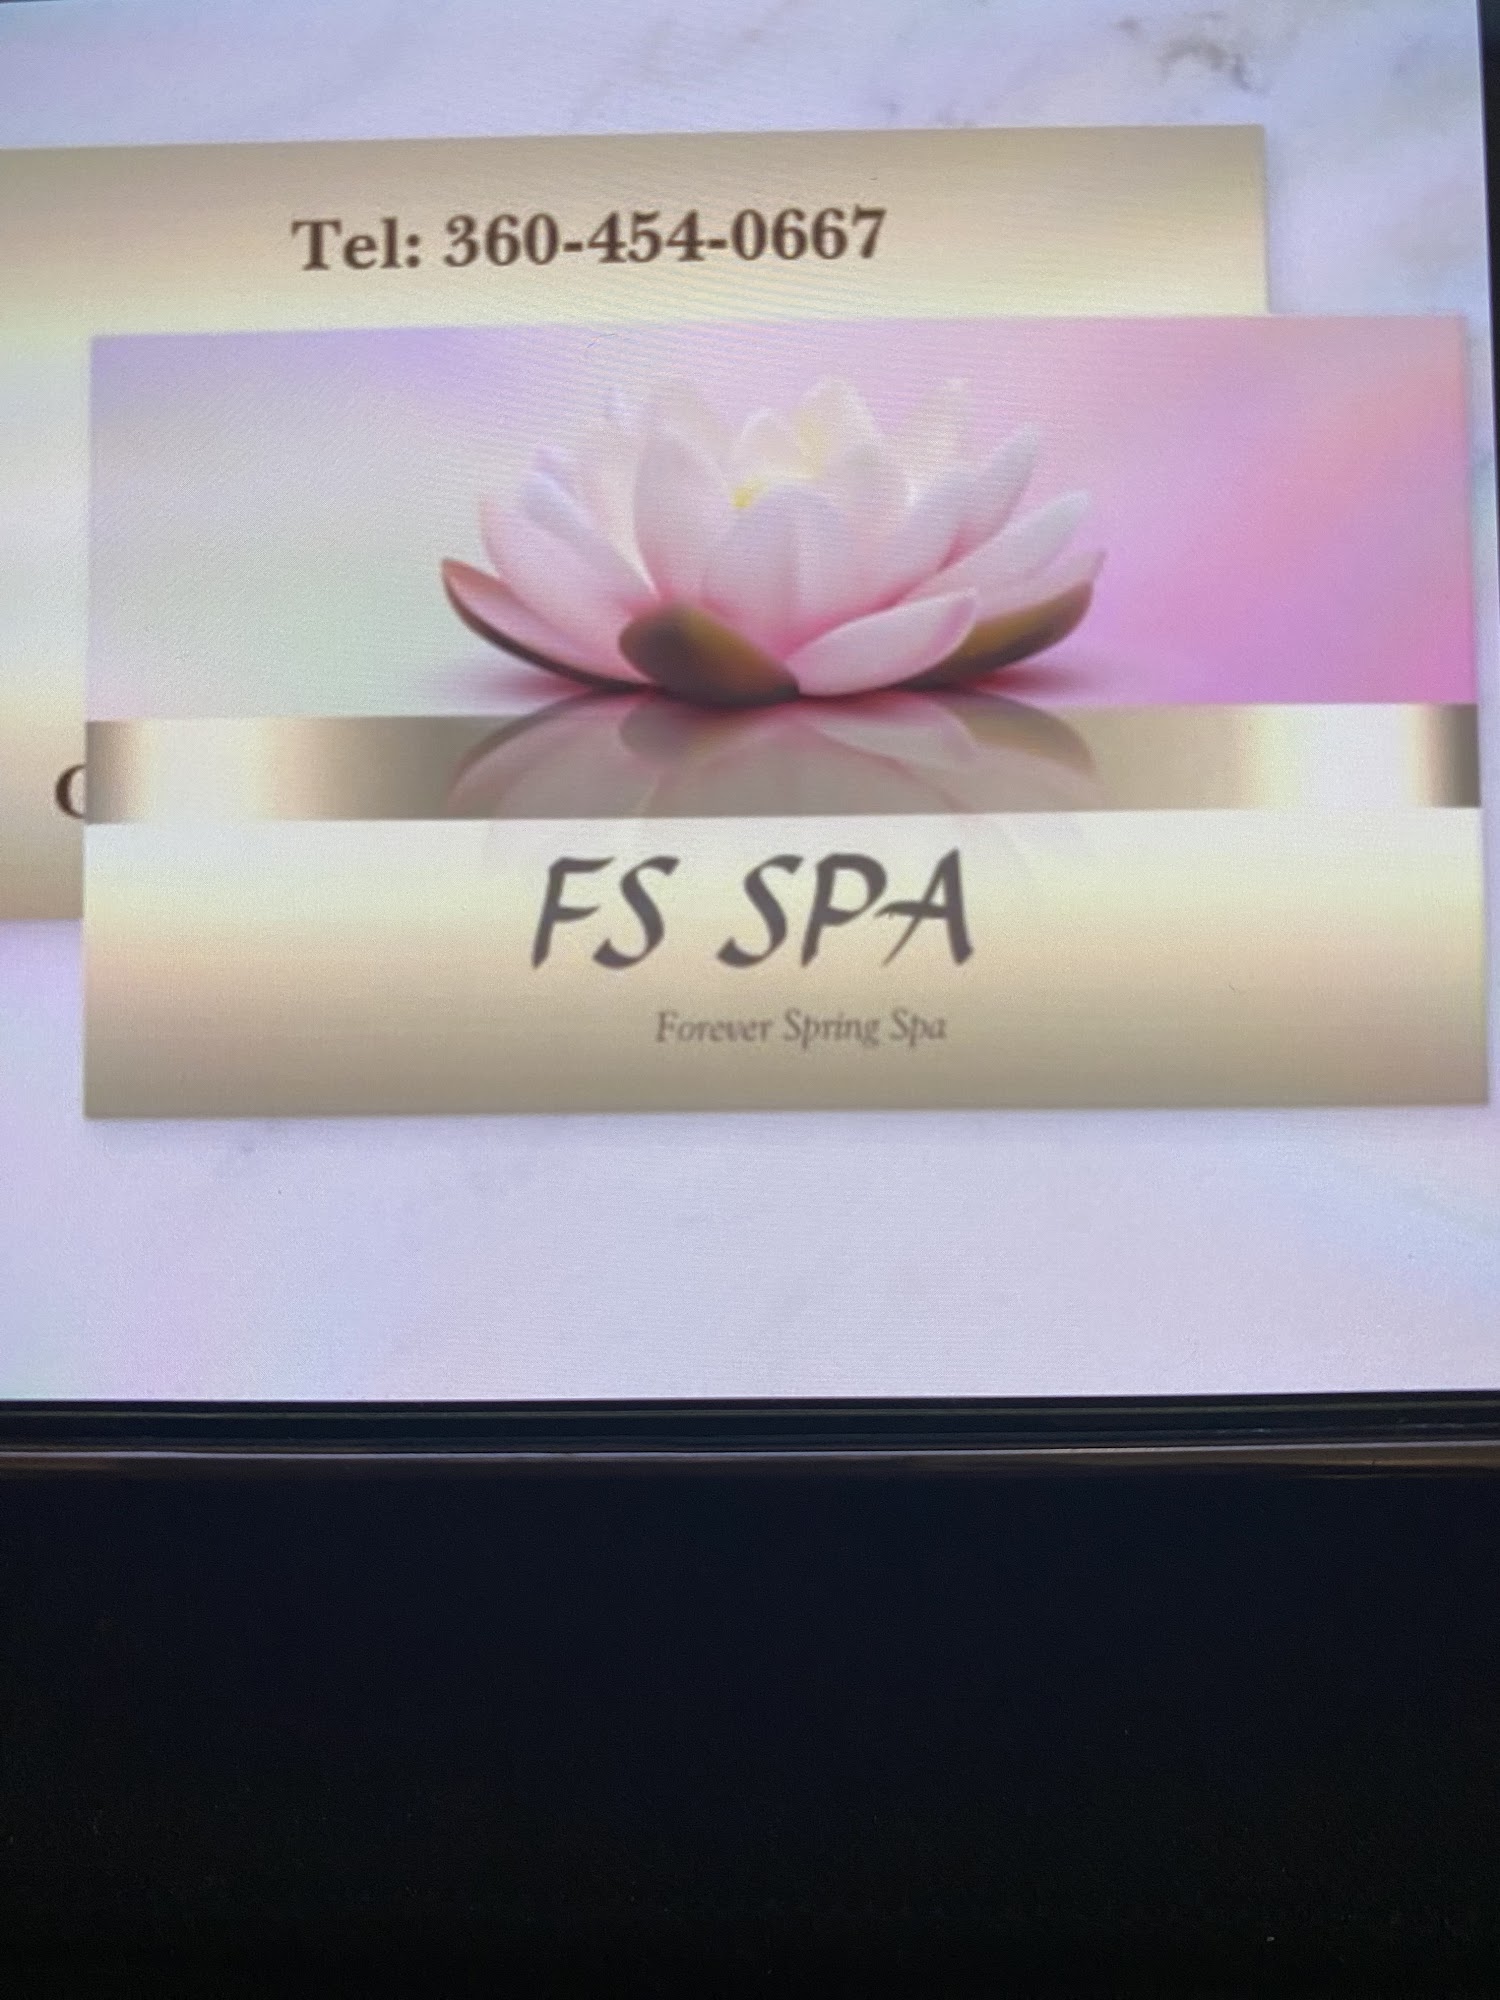 FS Spa ( Forever Spring Spa)